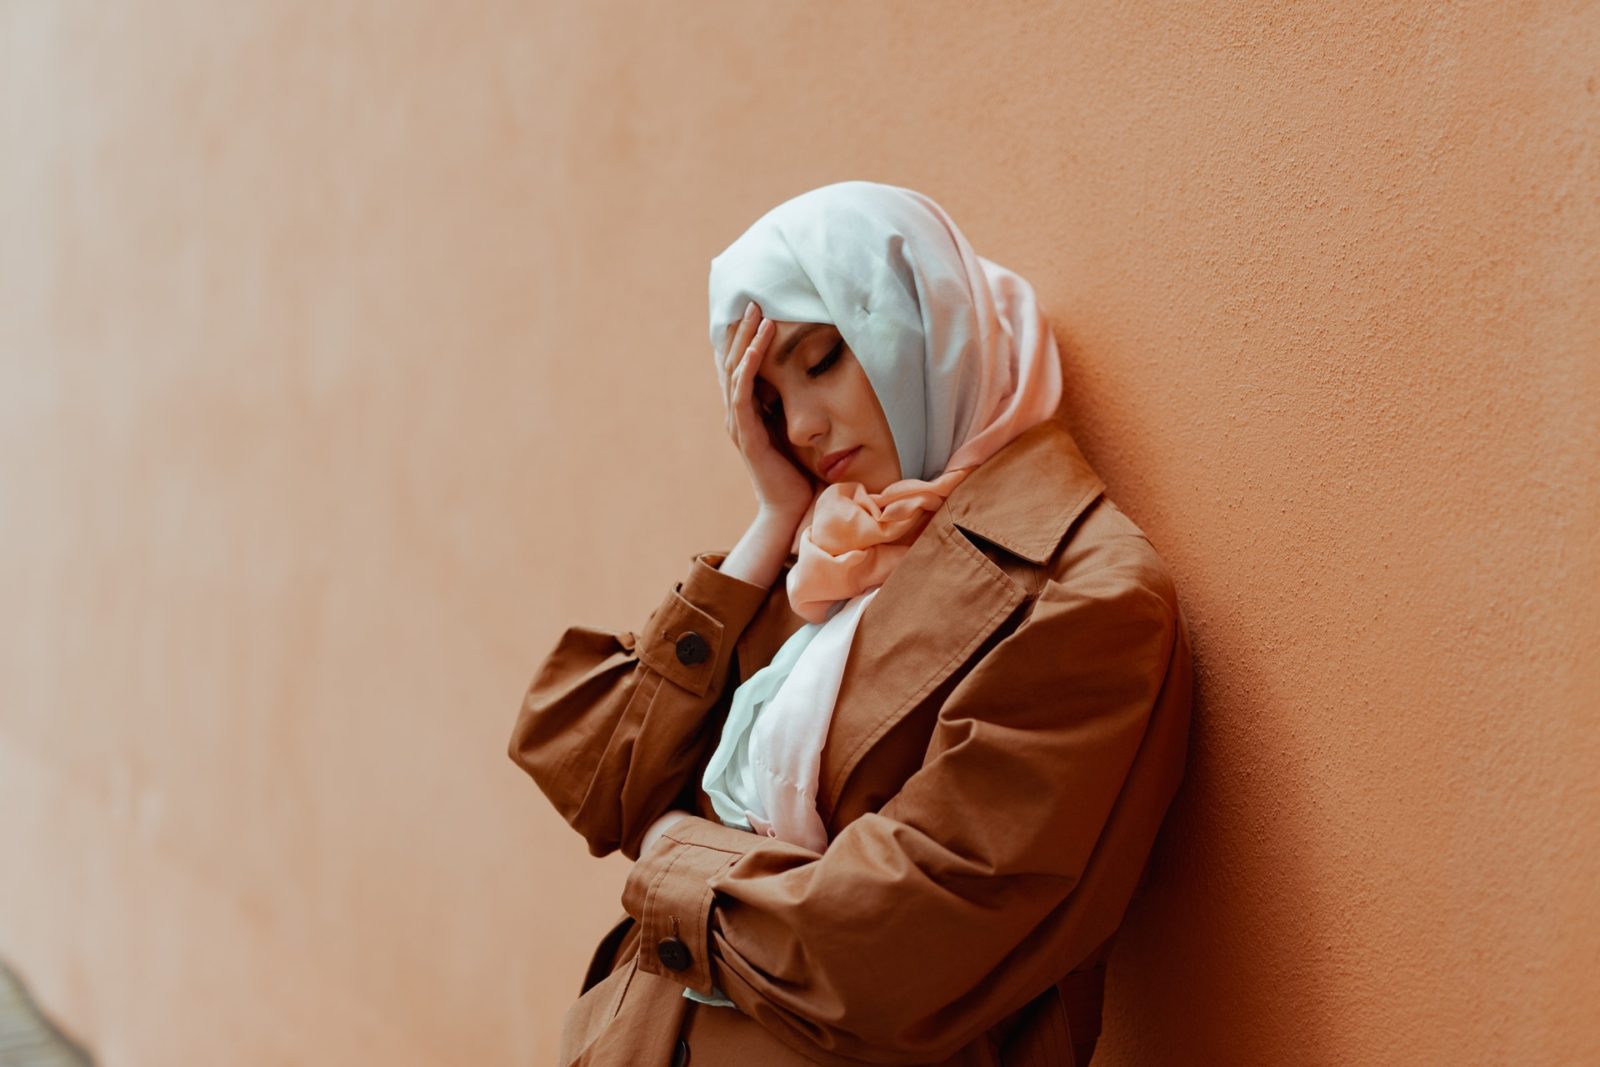 En fortvivlet muslimsk kvinde. Når en kvinde i et islamisk ægteskab ønsker skilsmisse, kan æresbegreber skabe problemer. Foto: Pexel